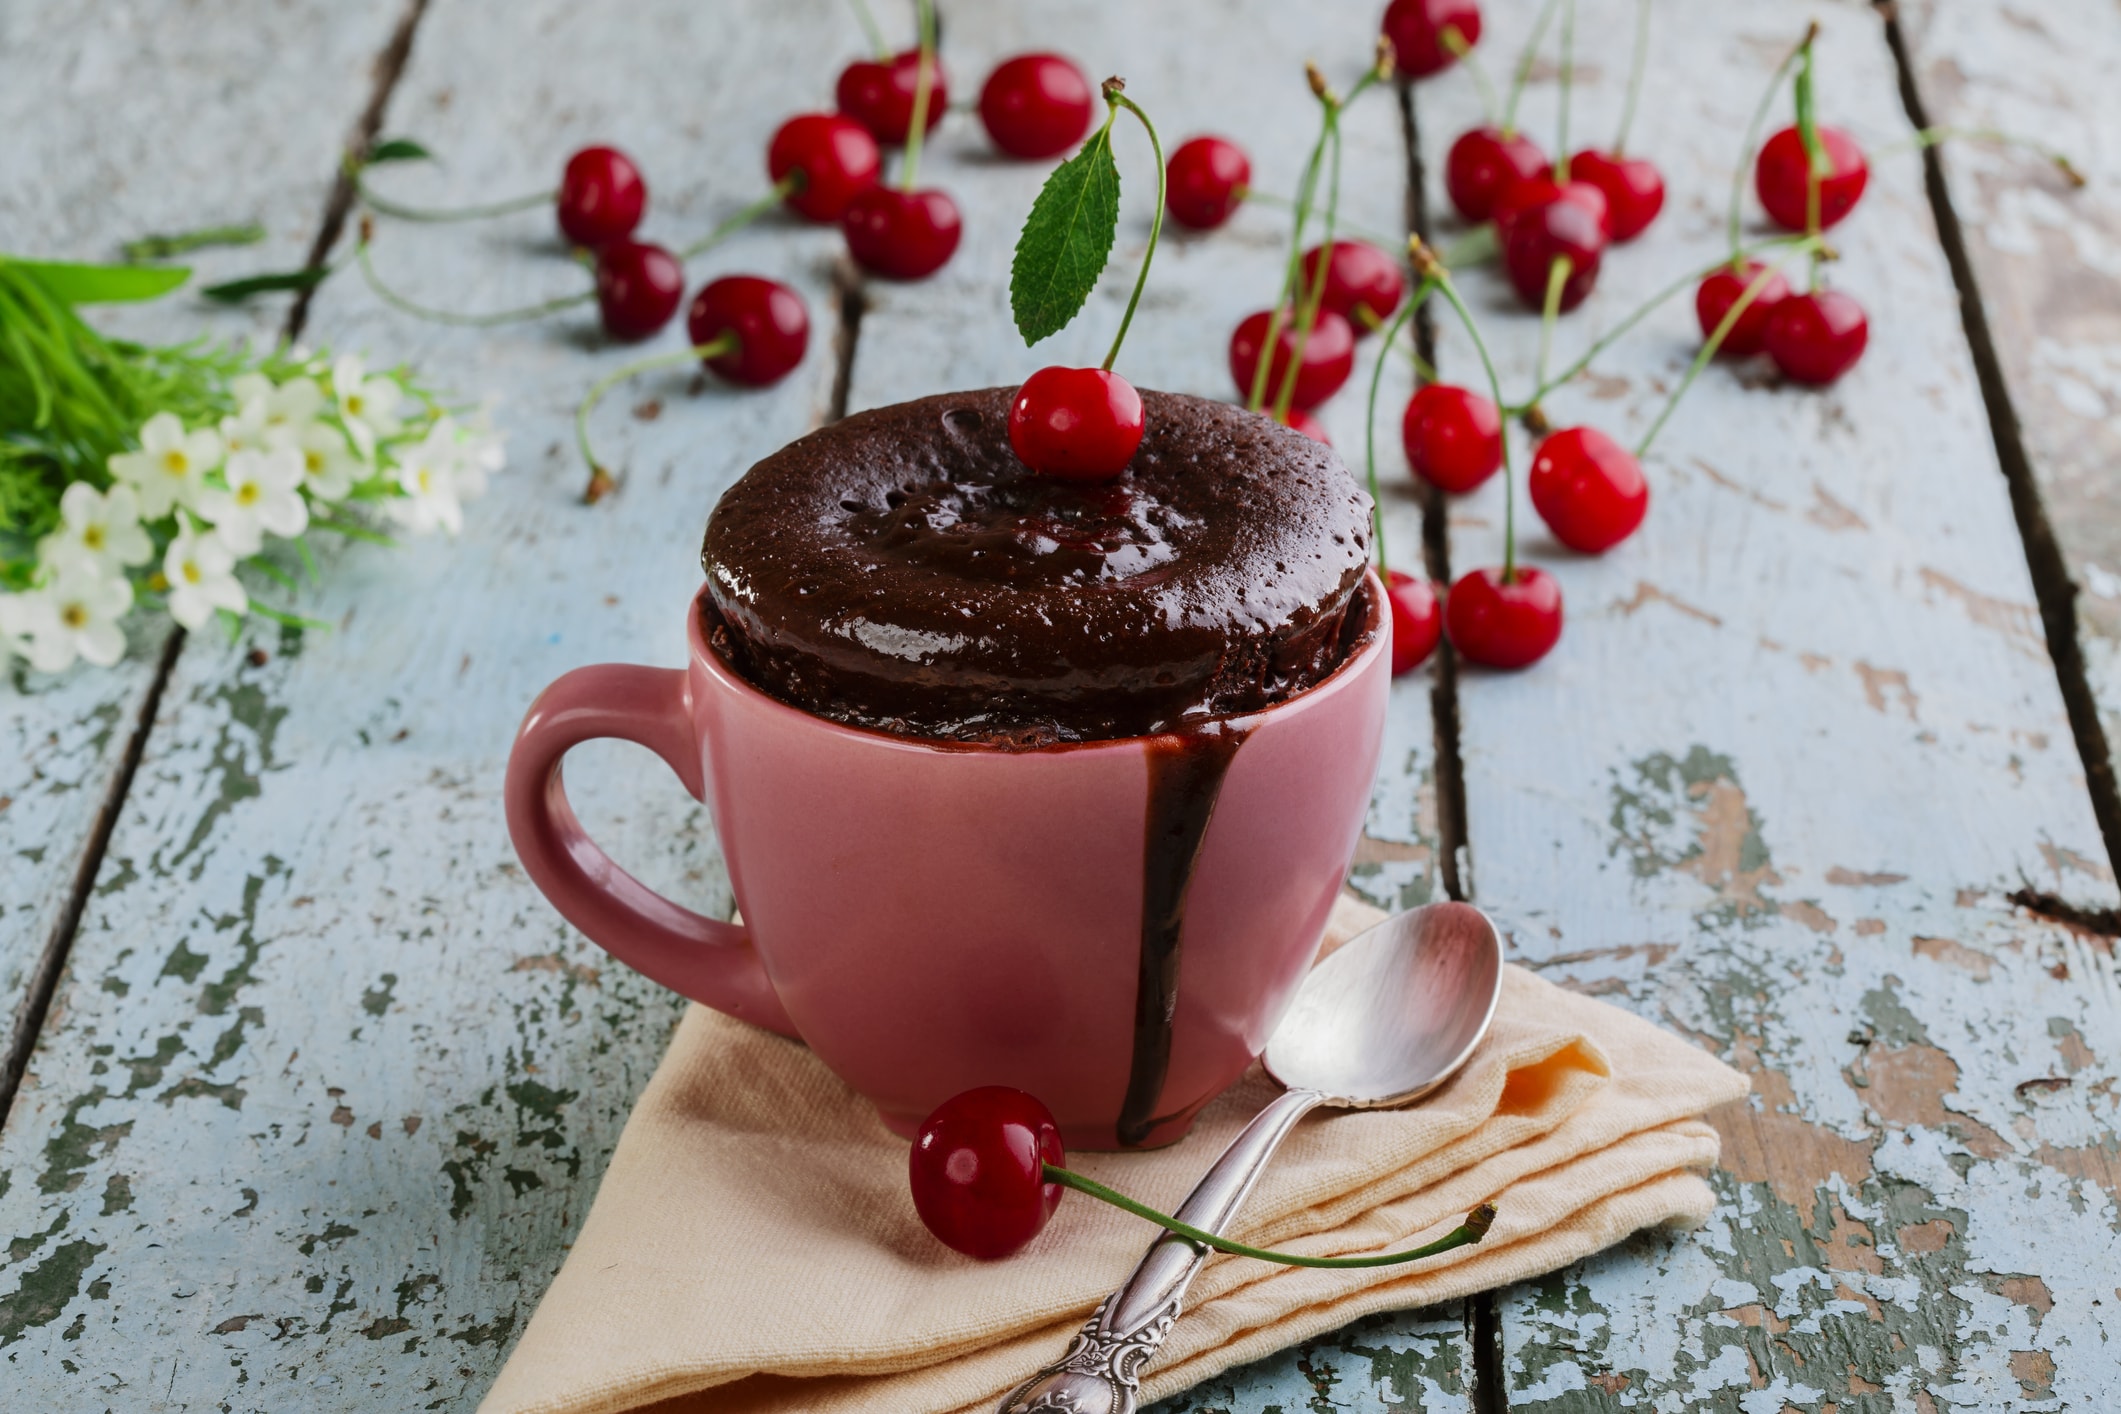 Mug cake s dokonalým spojením čokolády a višní.